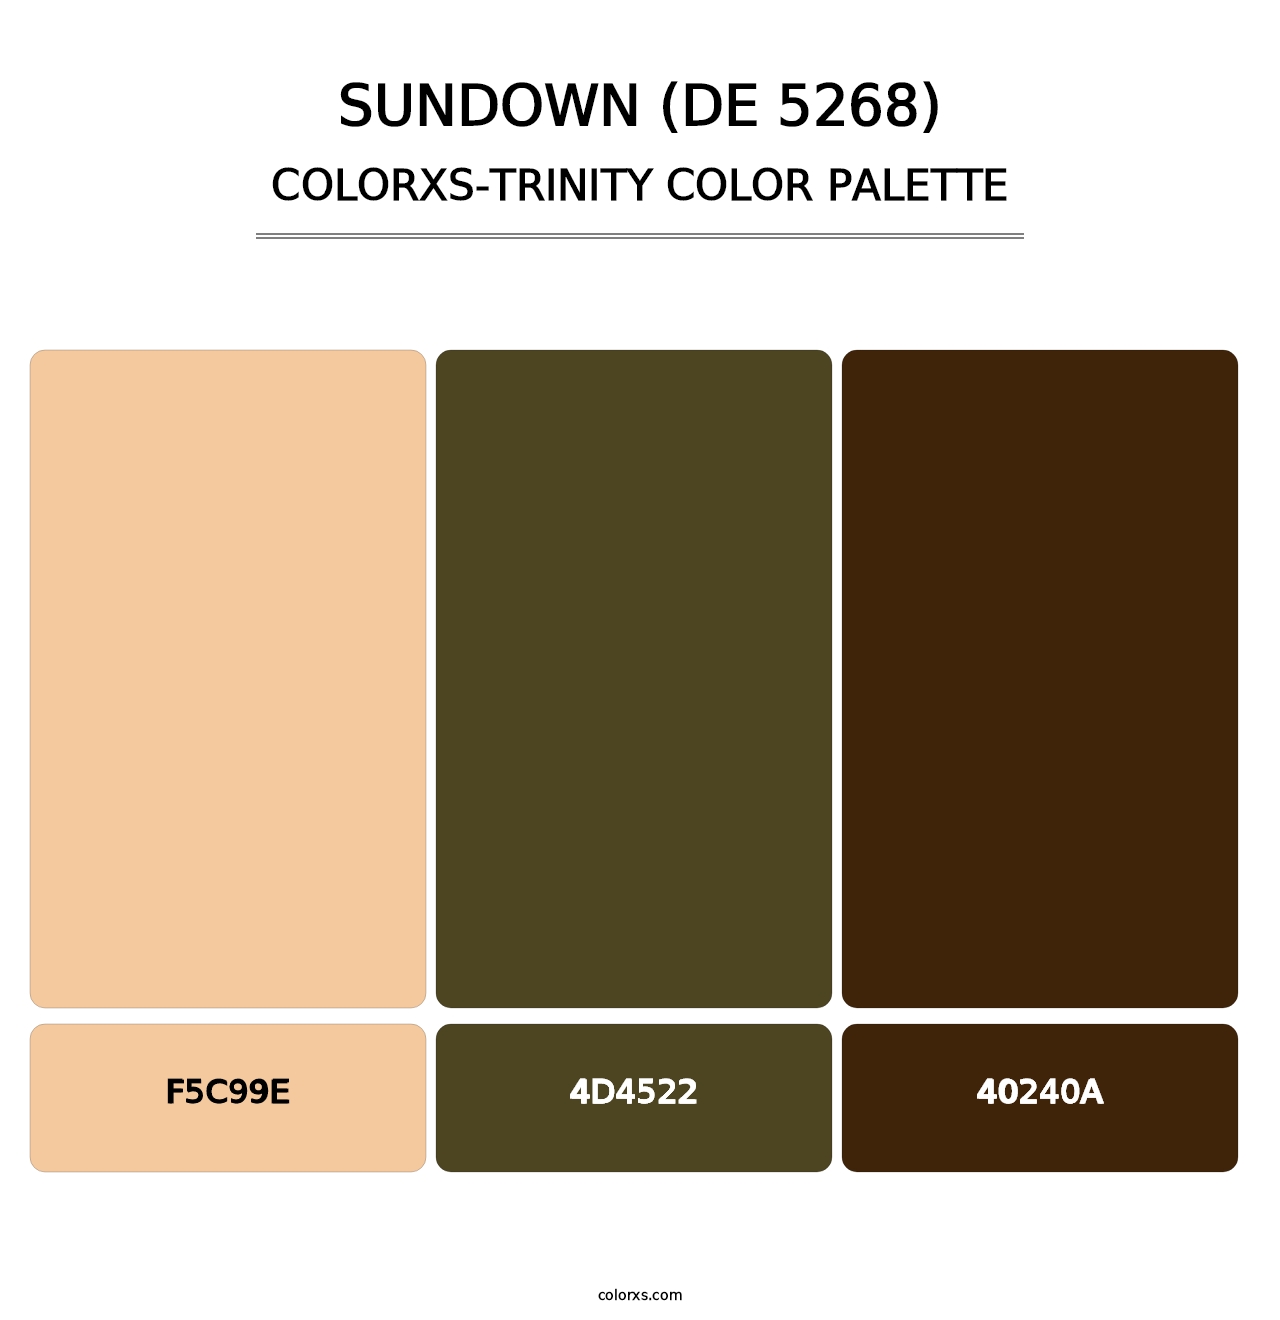 Sundown (DE 5268) - Colorxs Trinity Palette